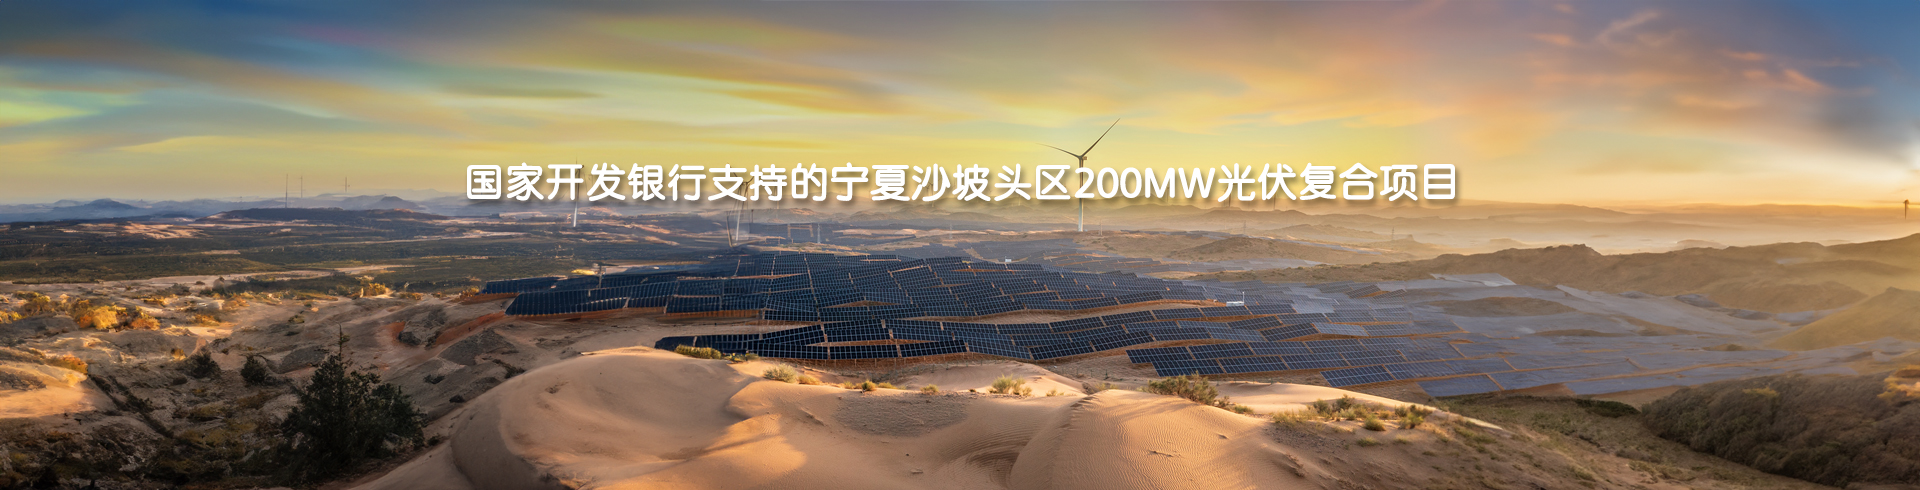 国家开发银行支持的宁夏沙坡头区200MW光伏复合项目-pc